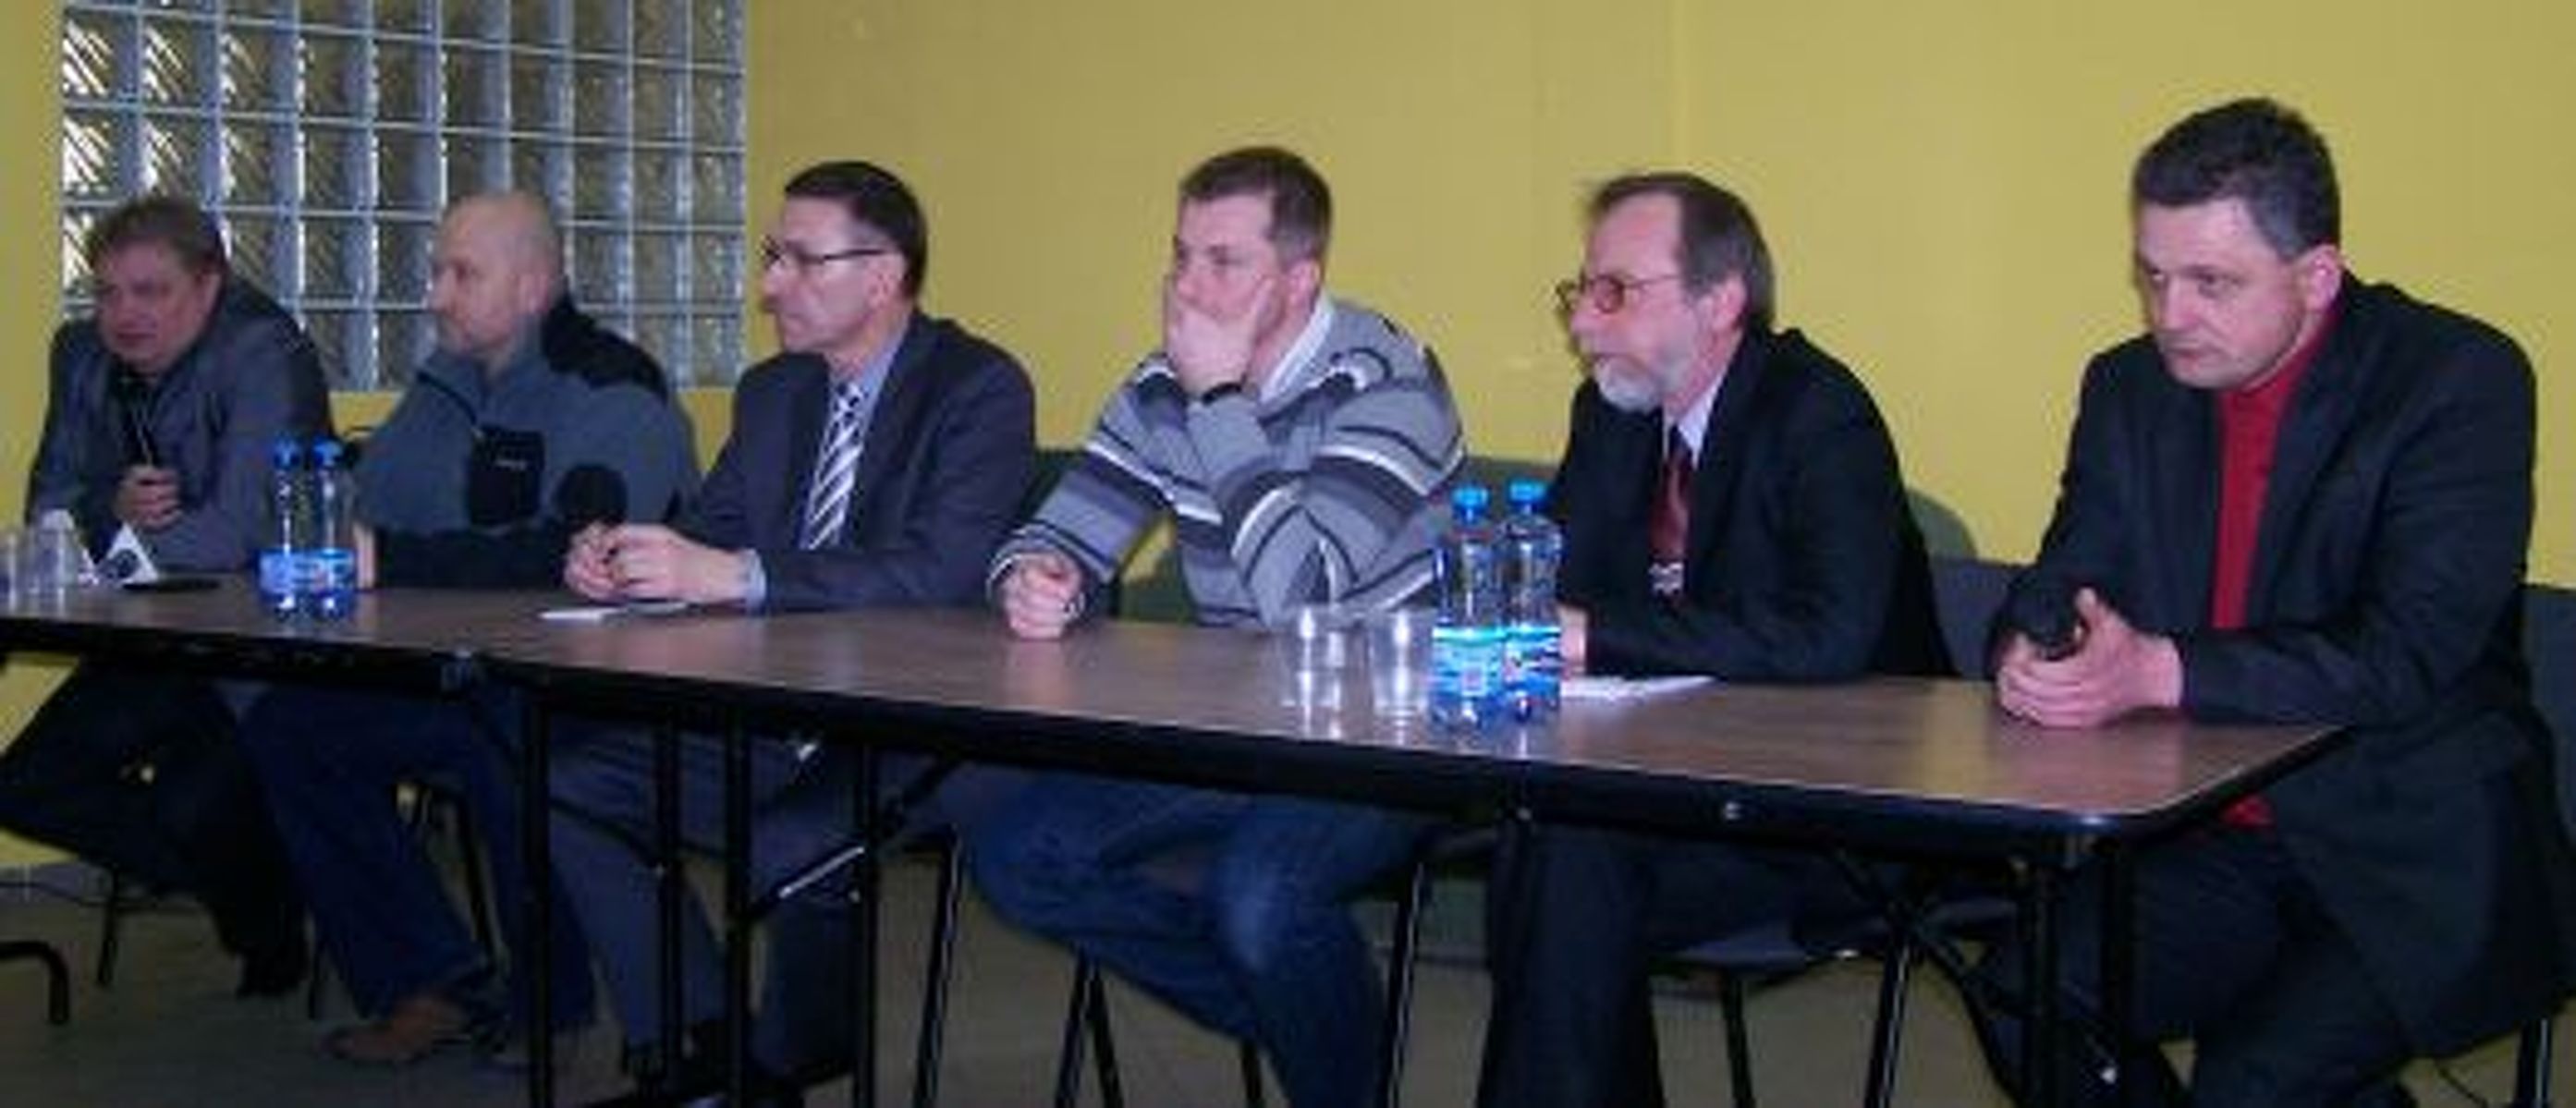 Marcin Kuchciński (czwarty z lewej) był gościem marcowej konferencji prasowej dotyczącej współpracy klubu i miasta. Fot. em